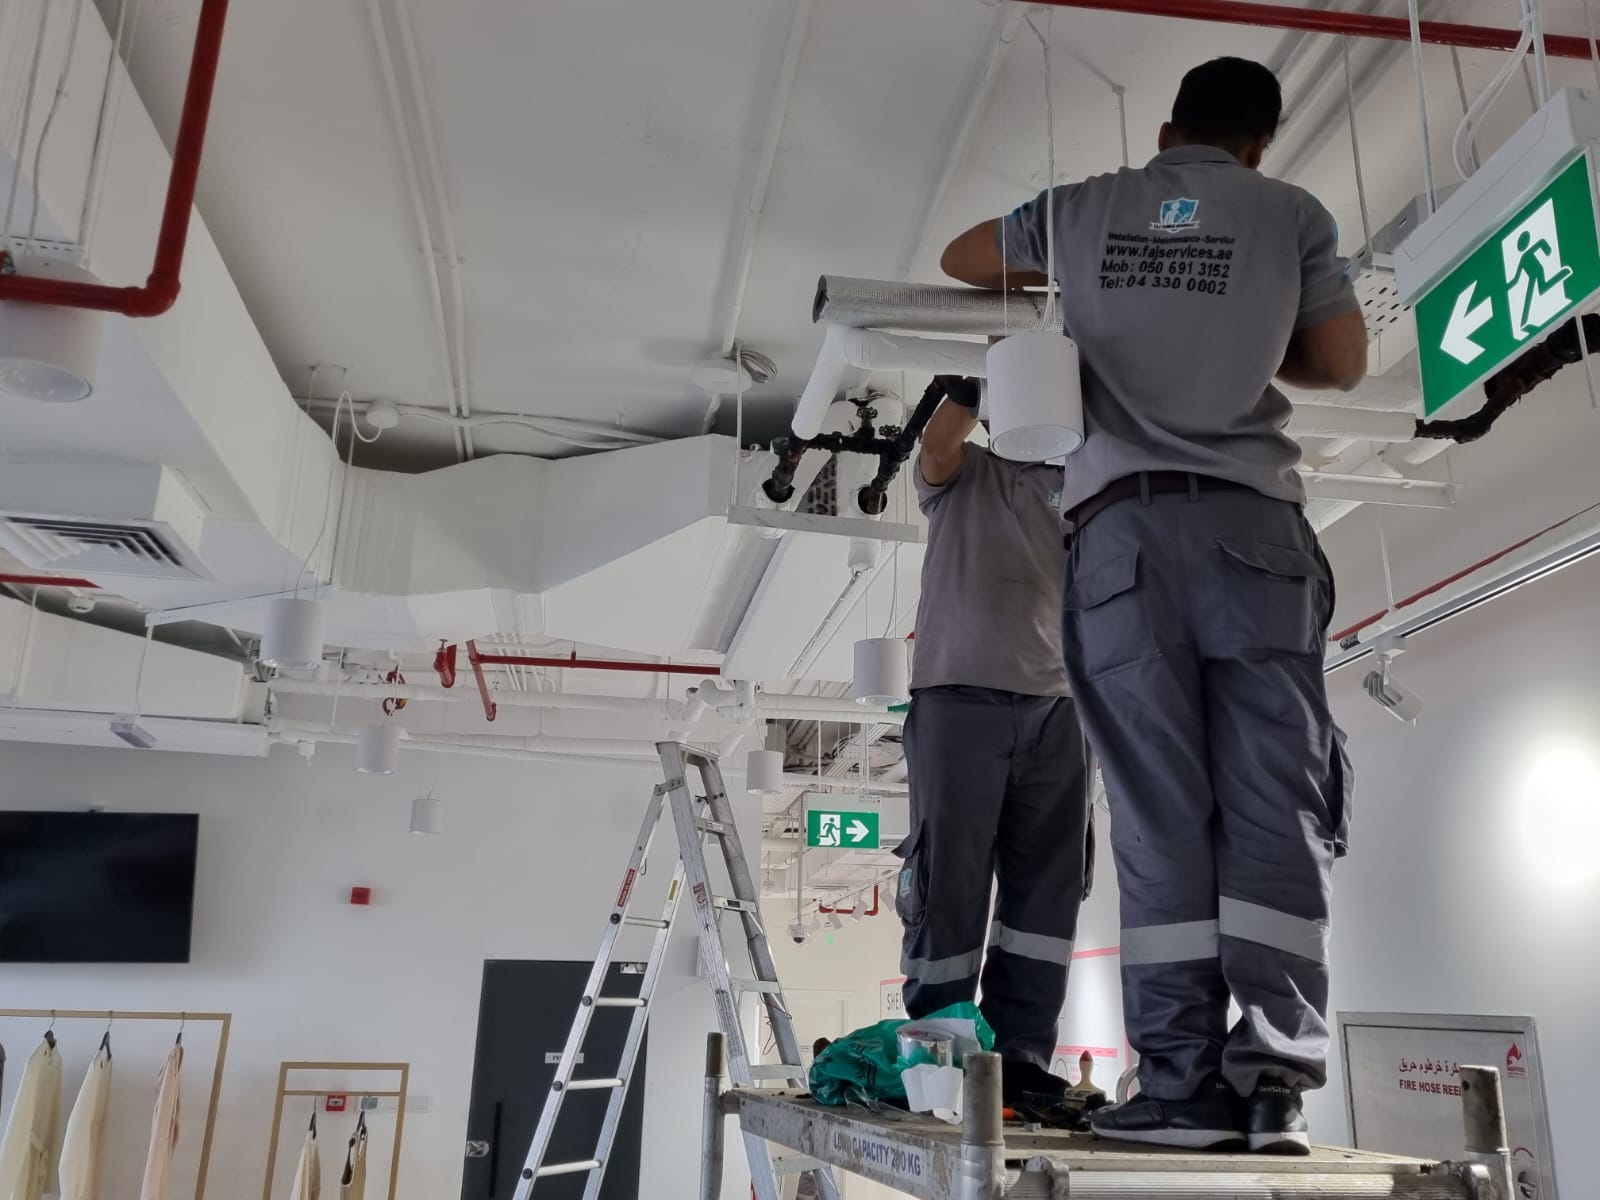 AC Repair Services in Dubai, UAE